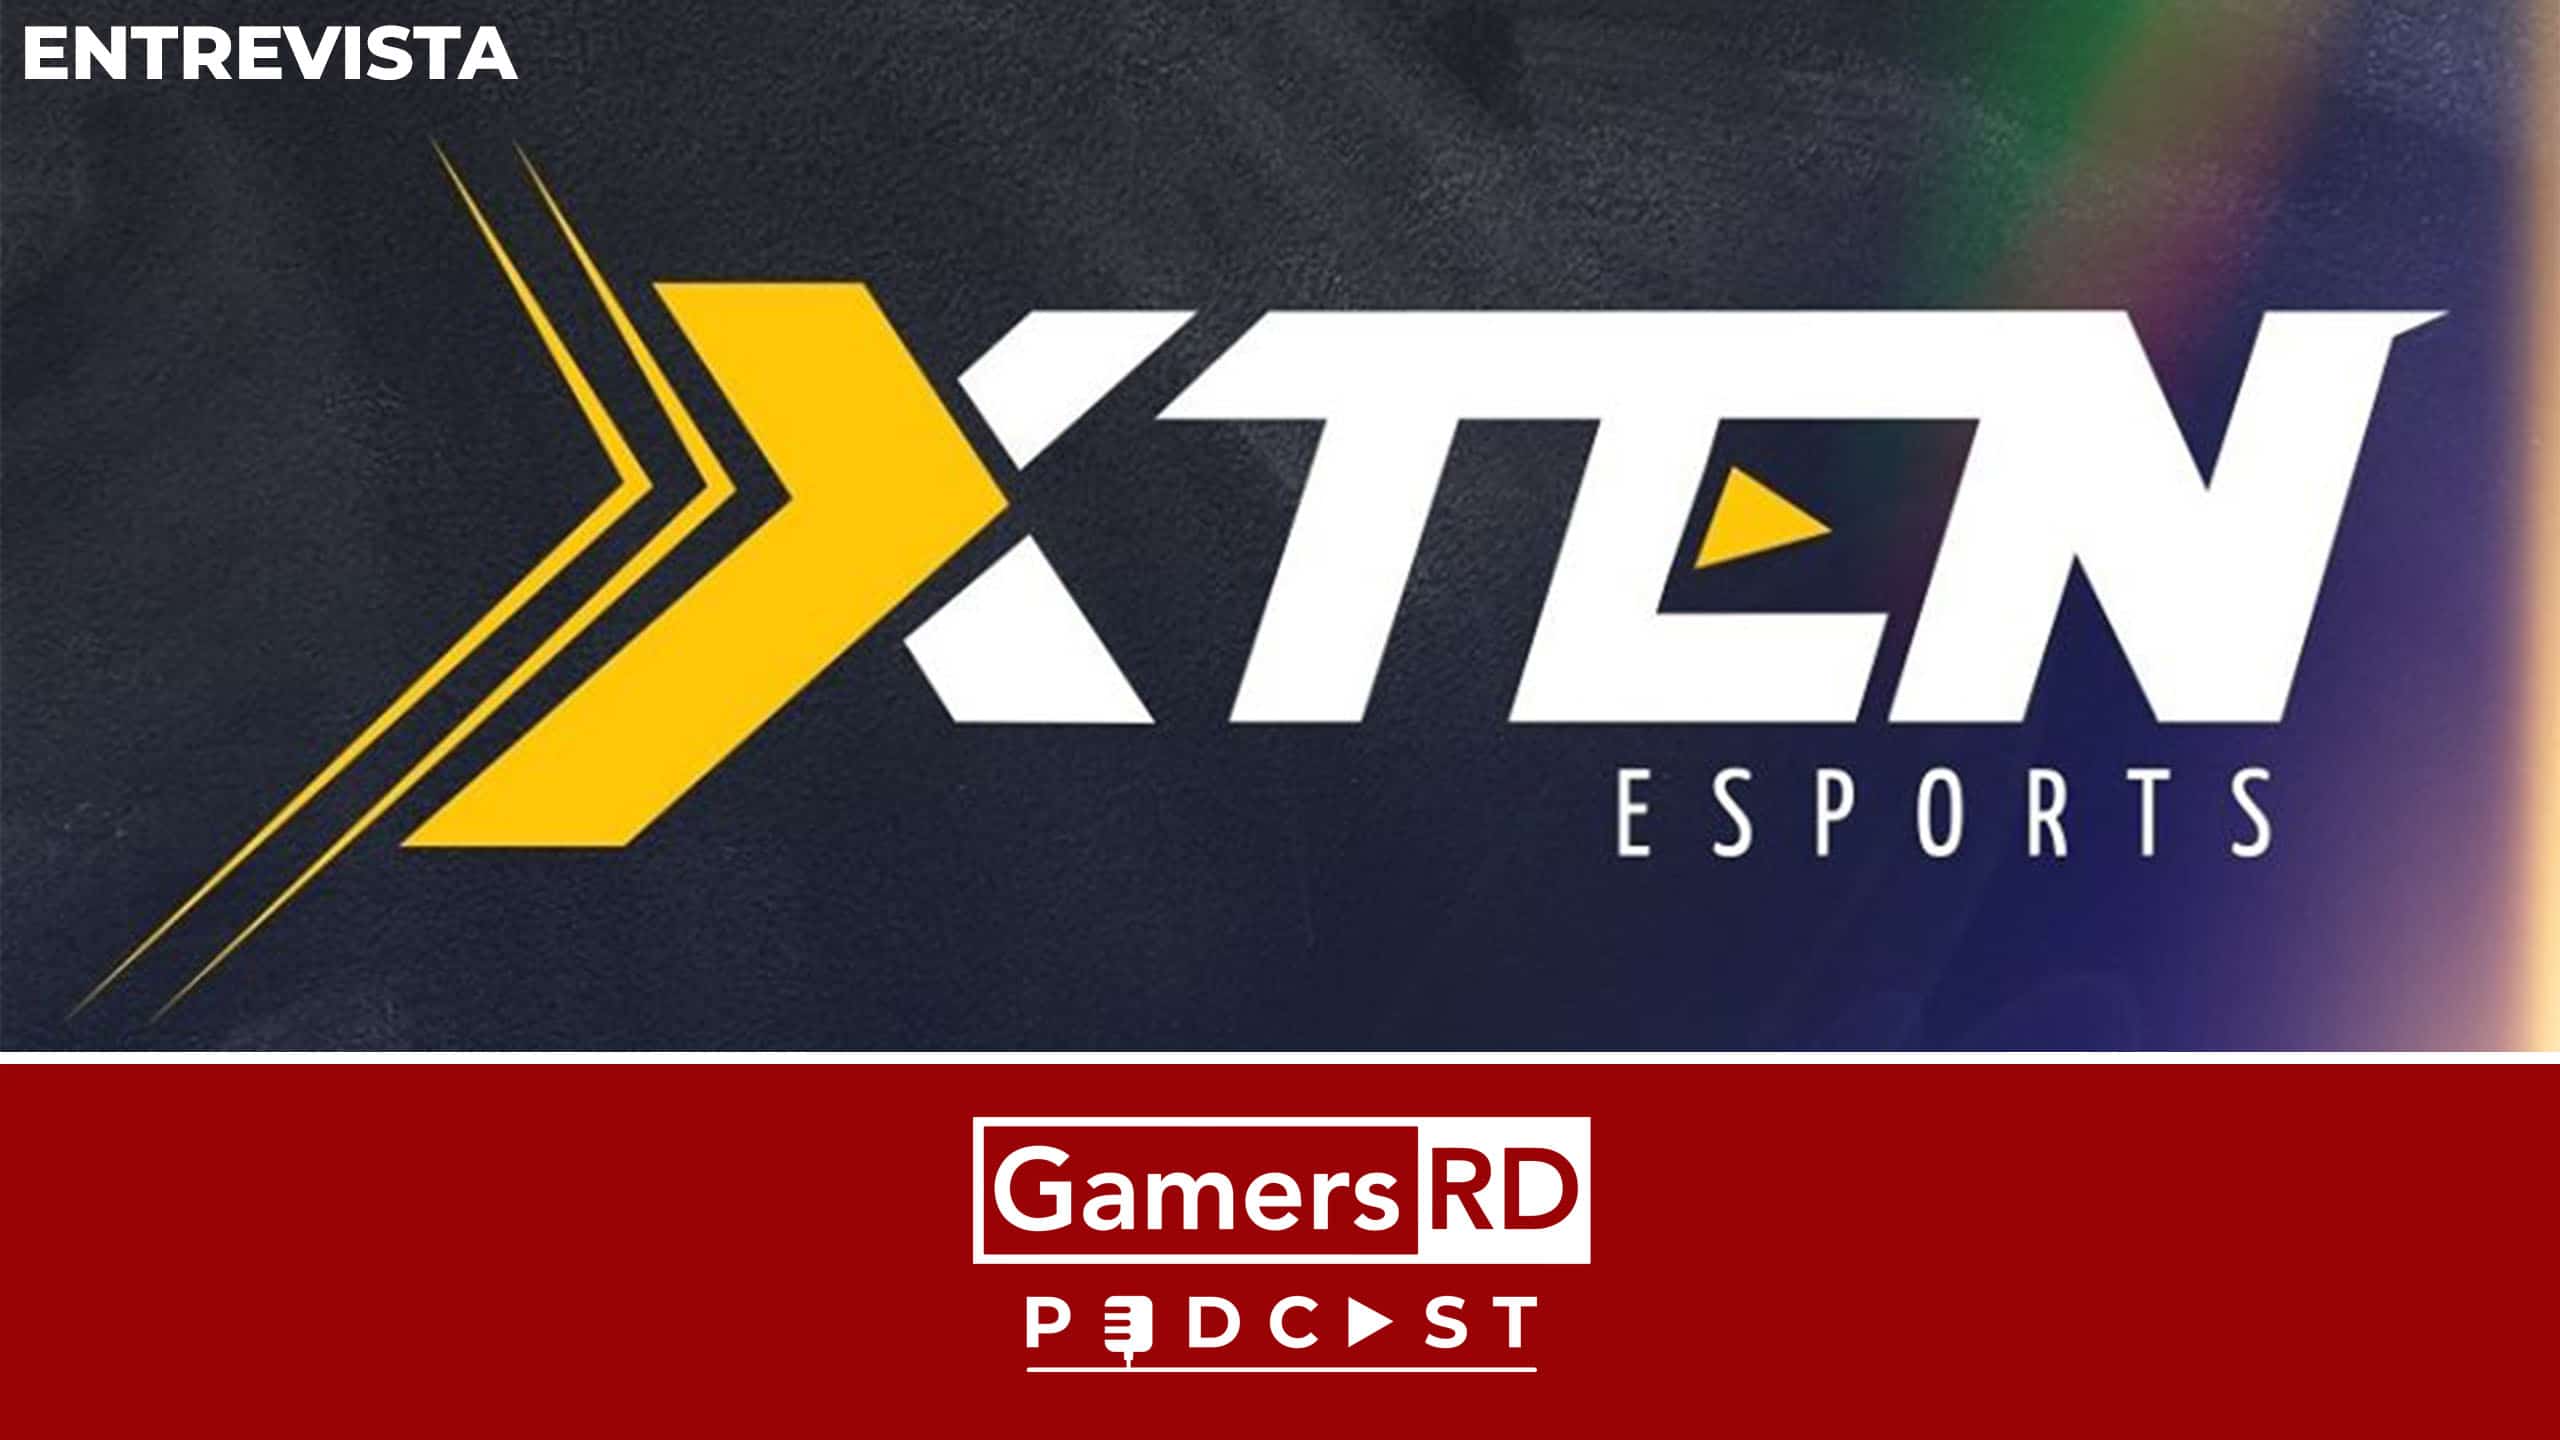 Entrevista a Xten Esports, Mexico, Pagina, GamersRD